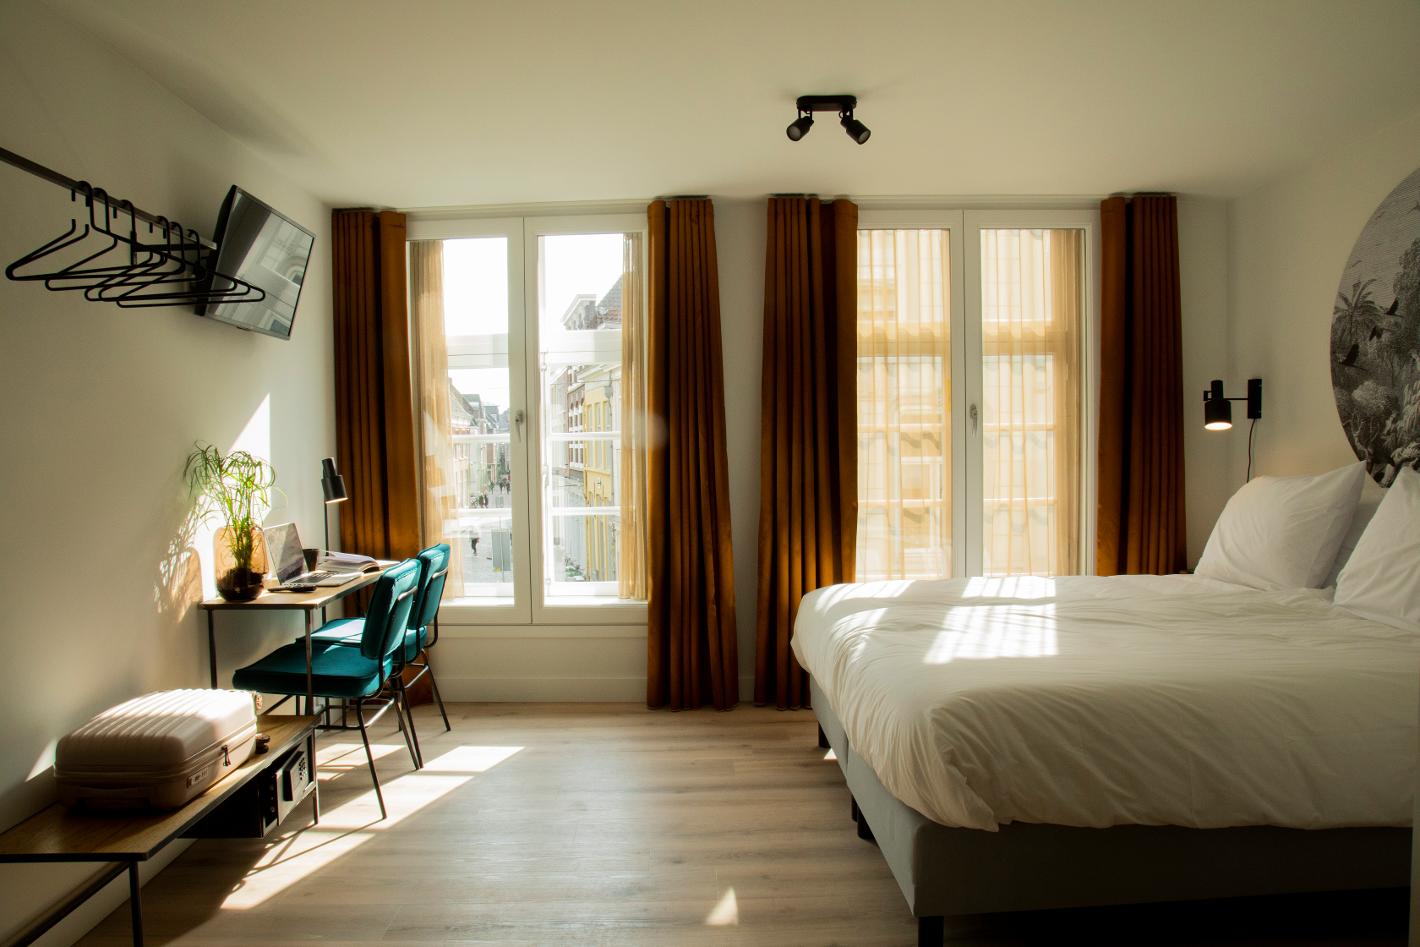 Photo Hotel Haverkist en Den Bosch, Dormir, Passer la nuit - #1